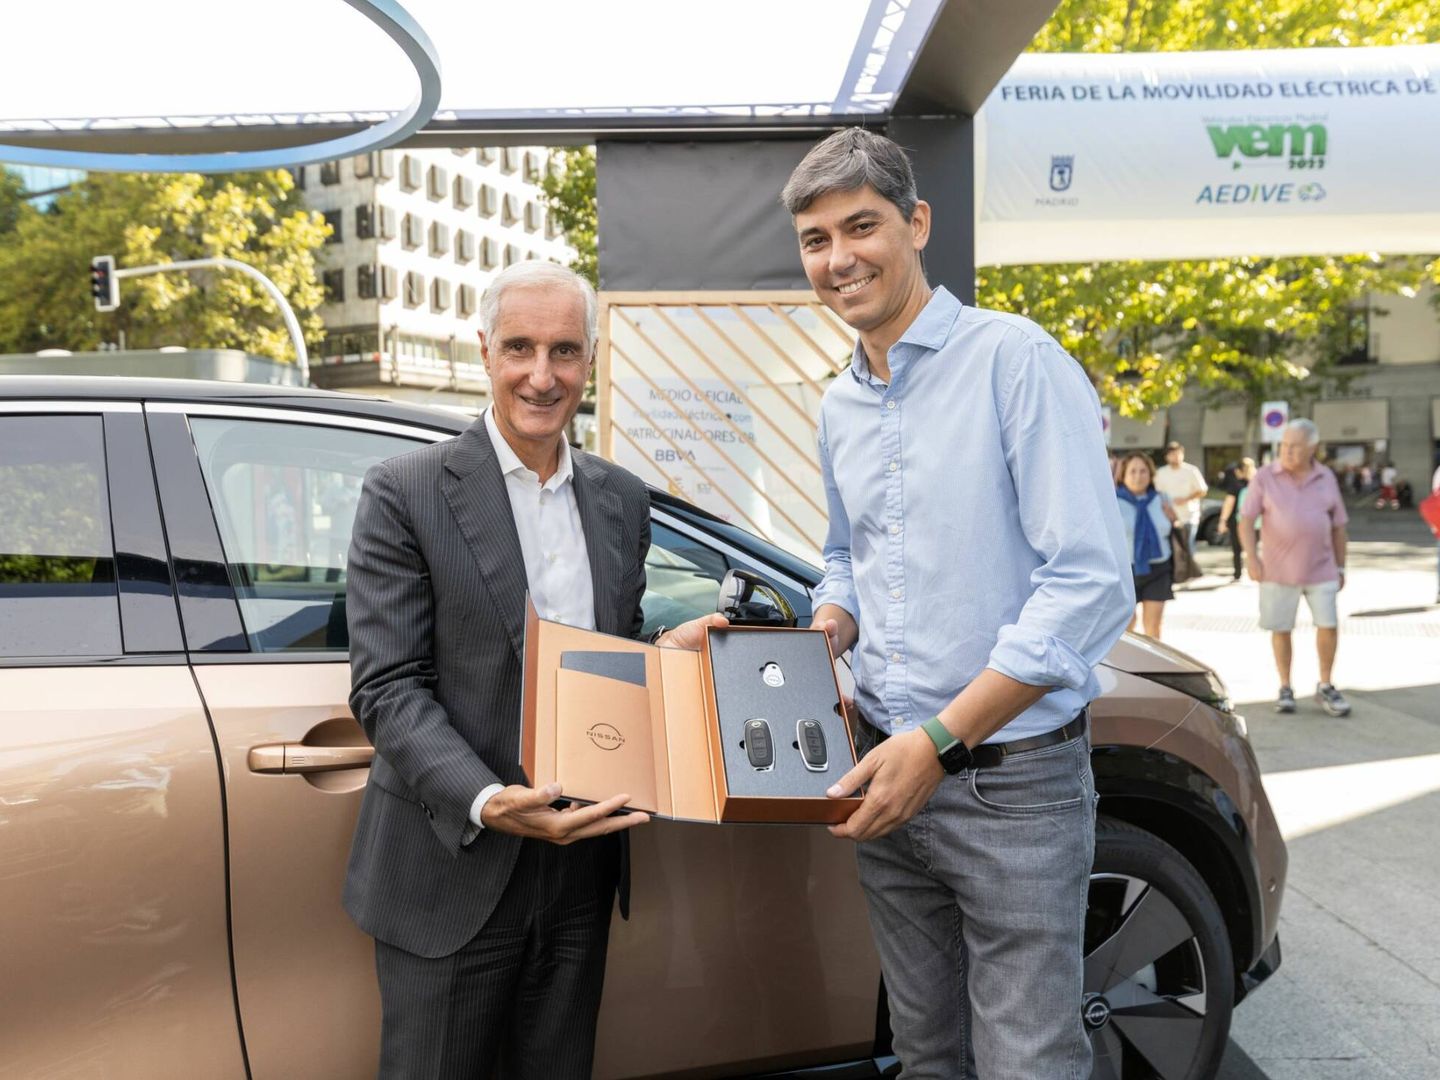 Mattucci entregó las llaves al primer comprador del Nissan Ariya en España.